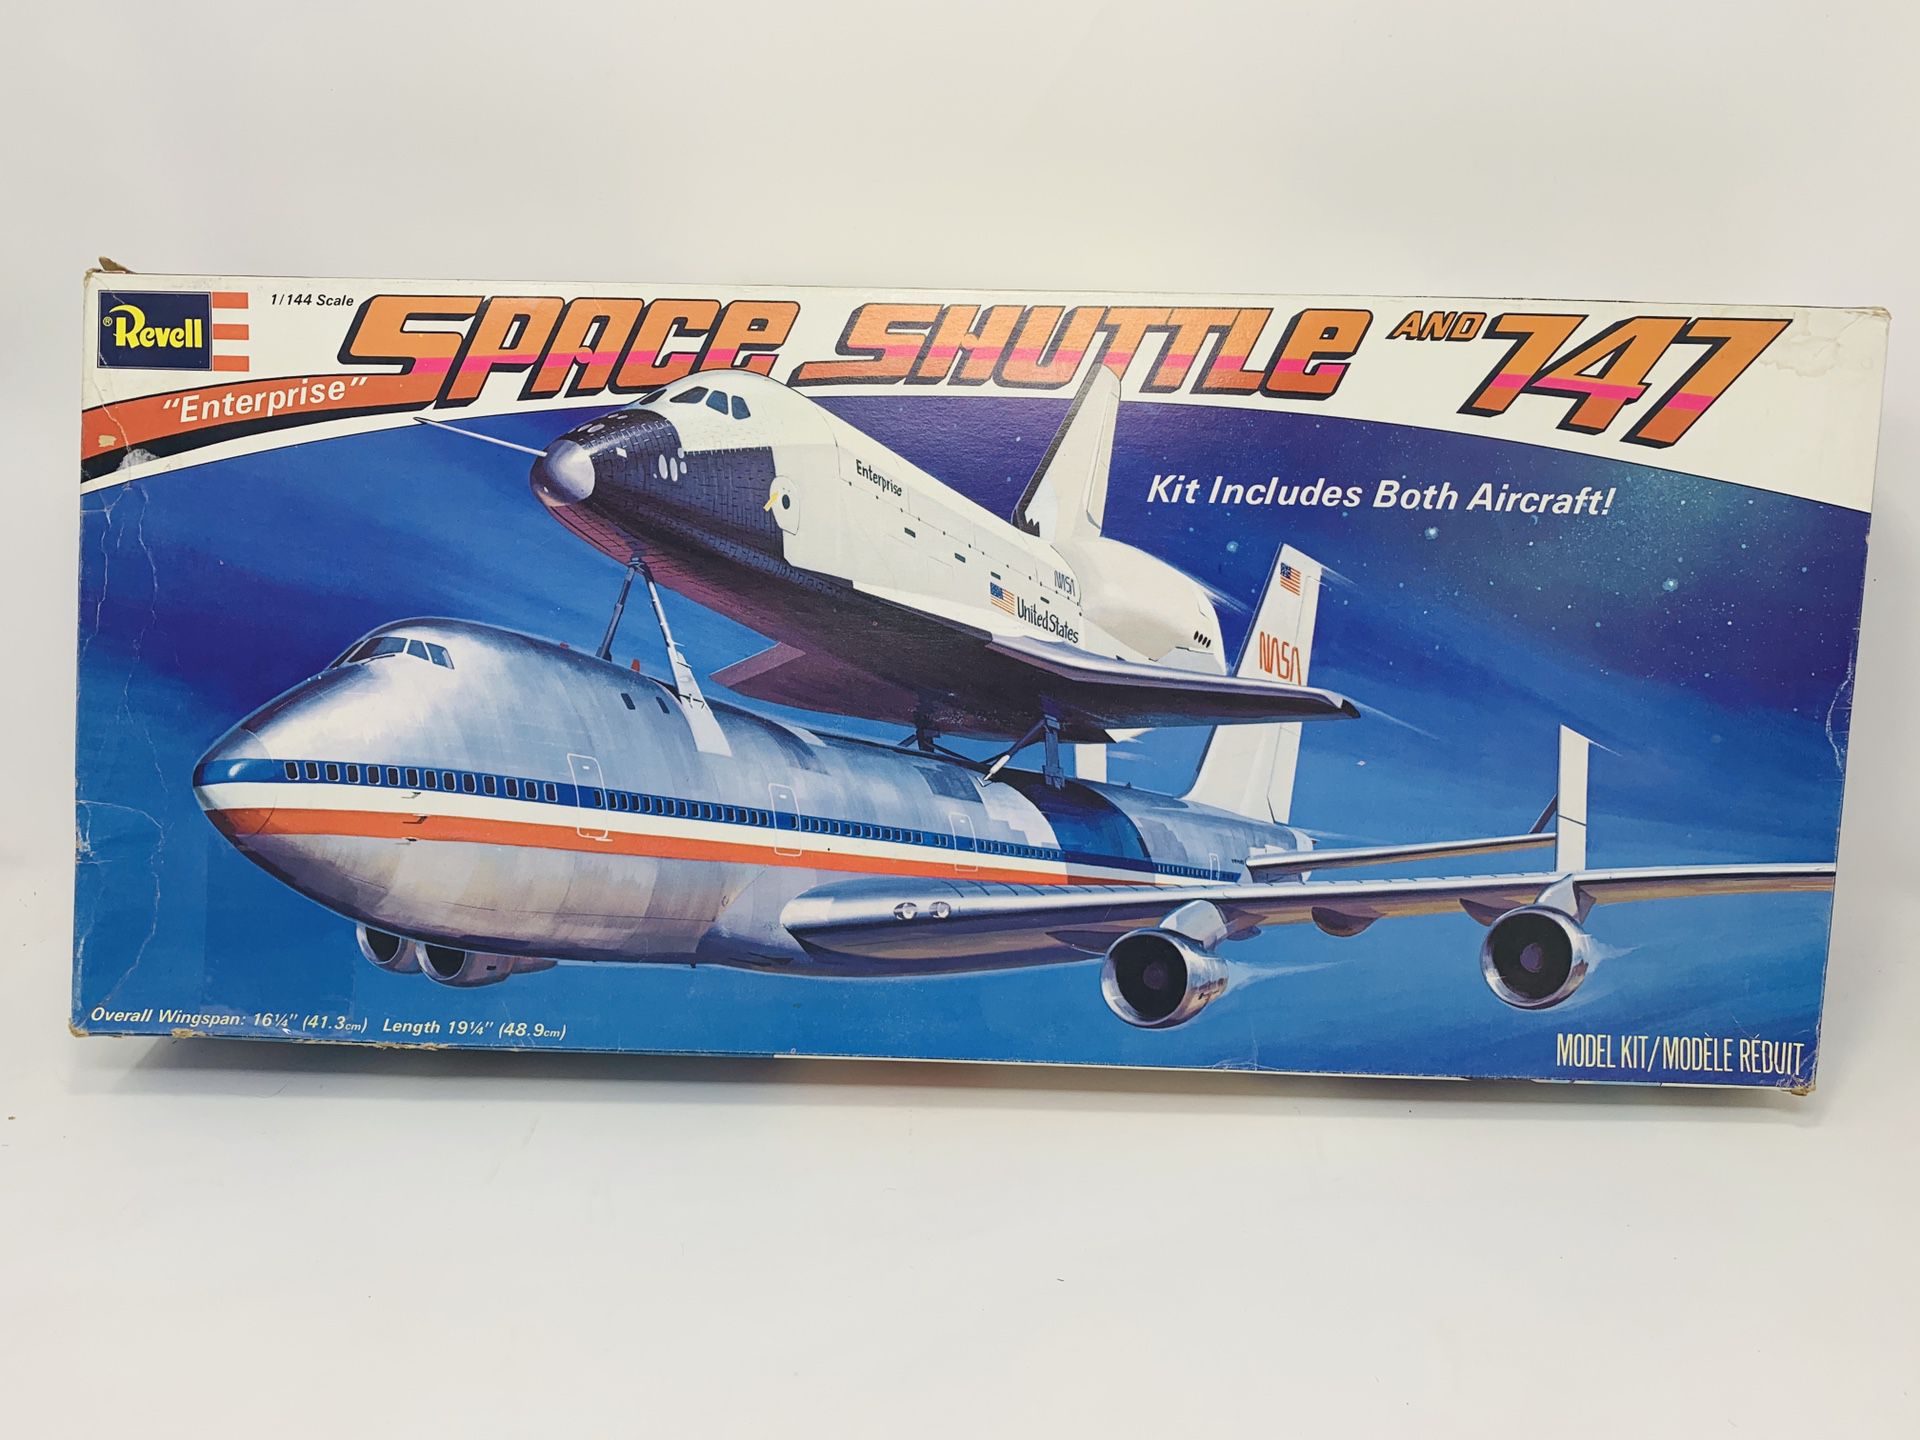 SPACE SHUTTLE ORBITER ENTERPRISE & BOEING JET 747,Plastic Model Kit,Scale:1/144